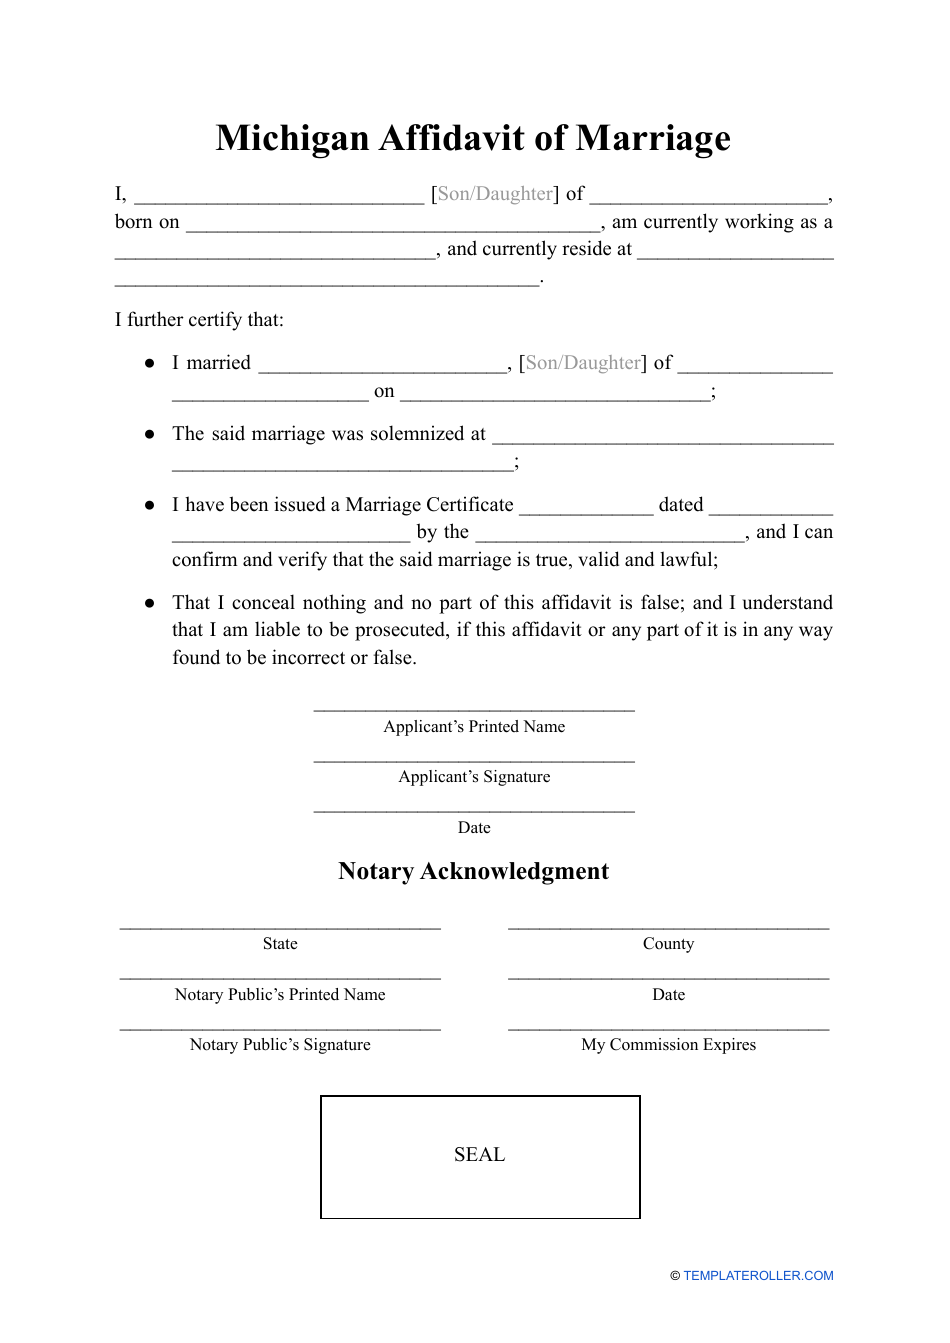 Affidavit of Marriage - Michigan, Page 1